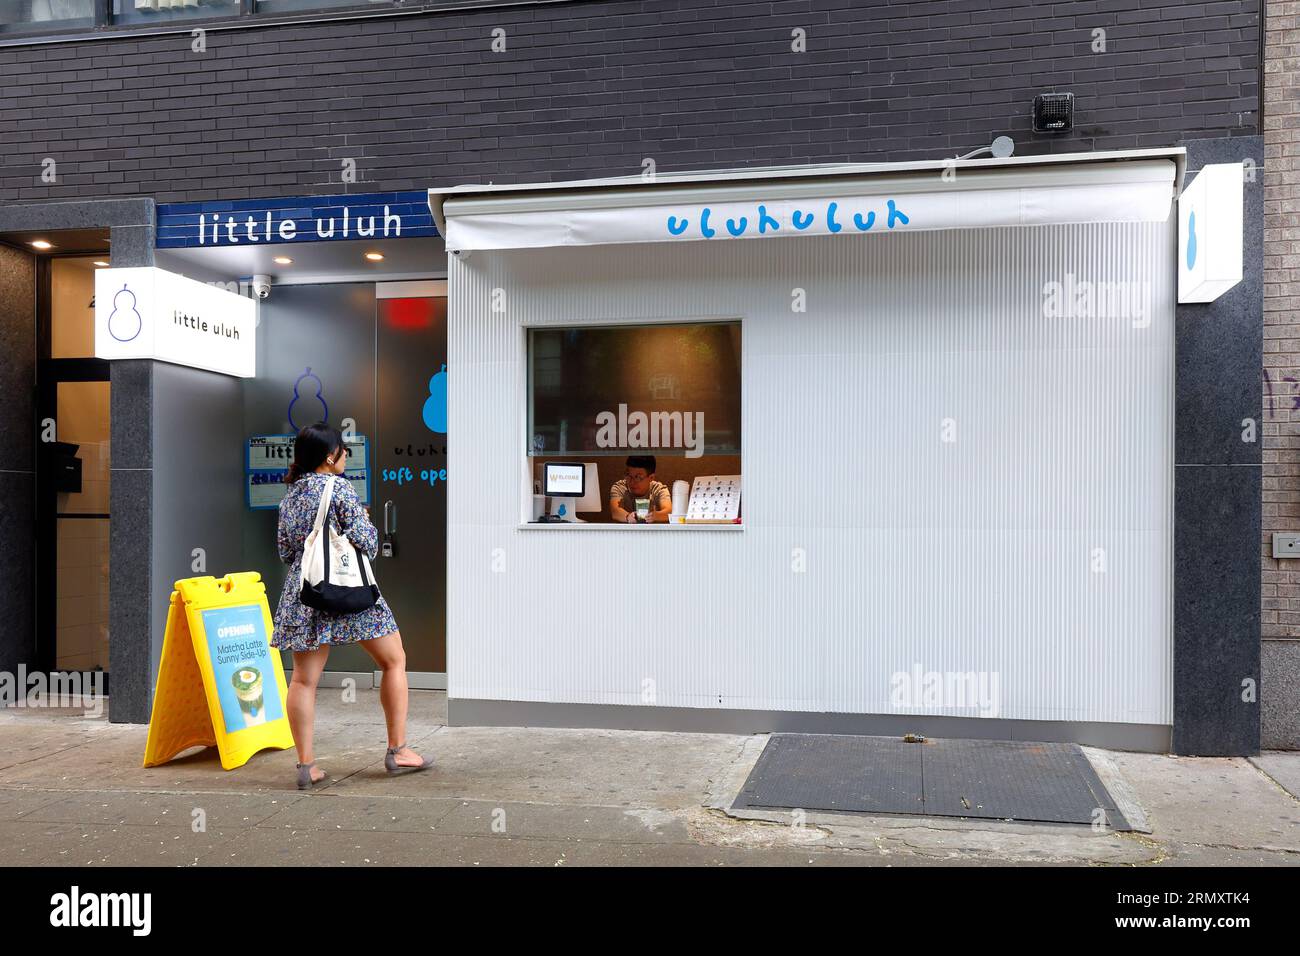 Little uluh, 218 E 14th St, Nueva York, NYC foto de una sucursal de una tienda de té de burbujas de uluh 葫芦 en el barrio East Village de Manhattan. Foto de stock